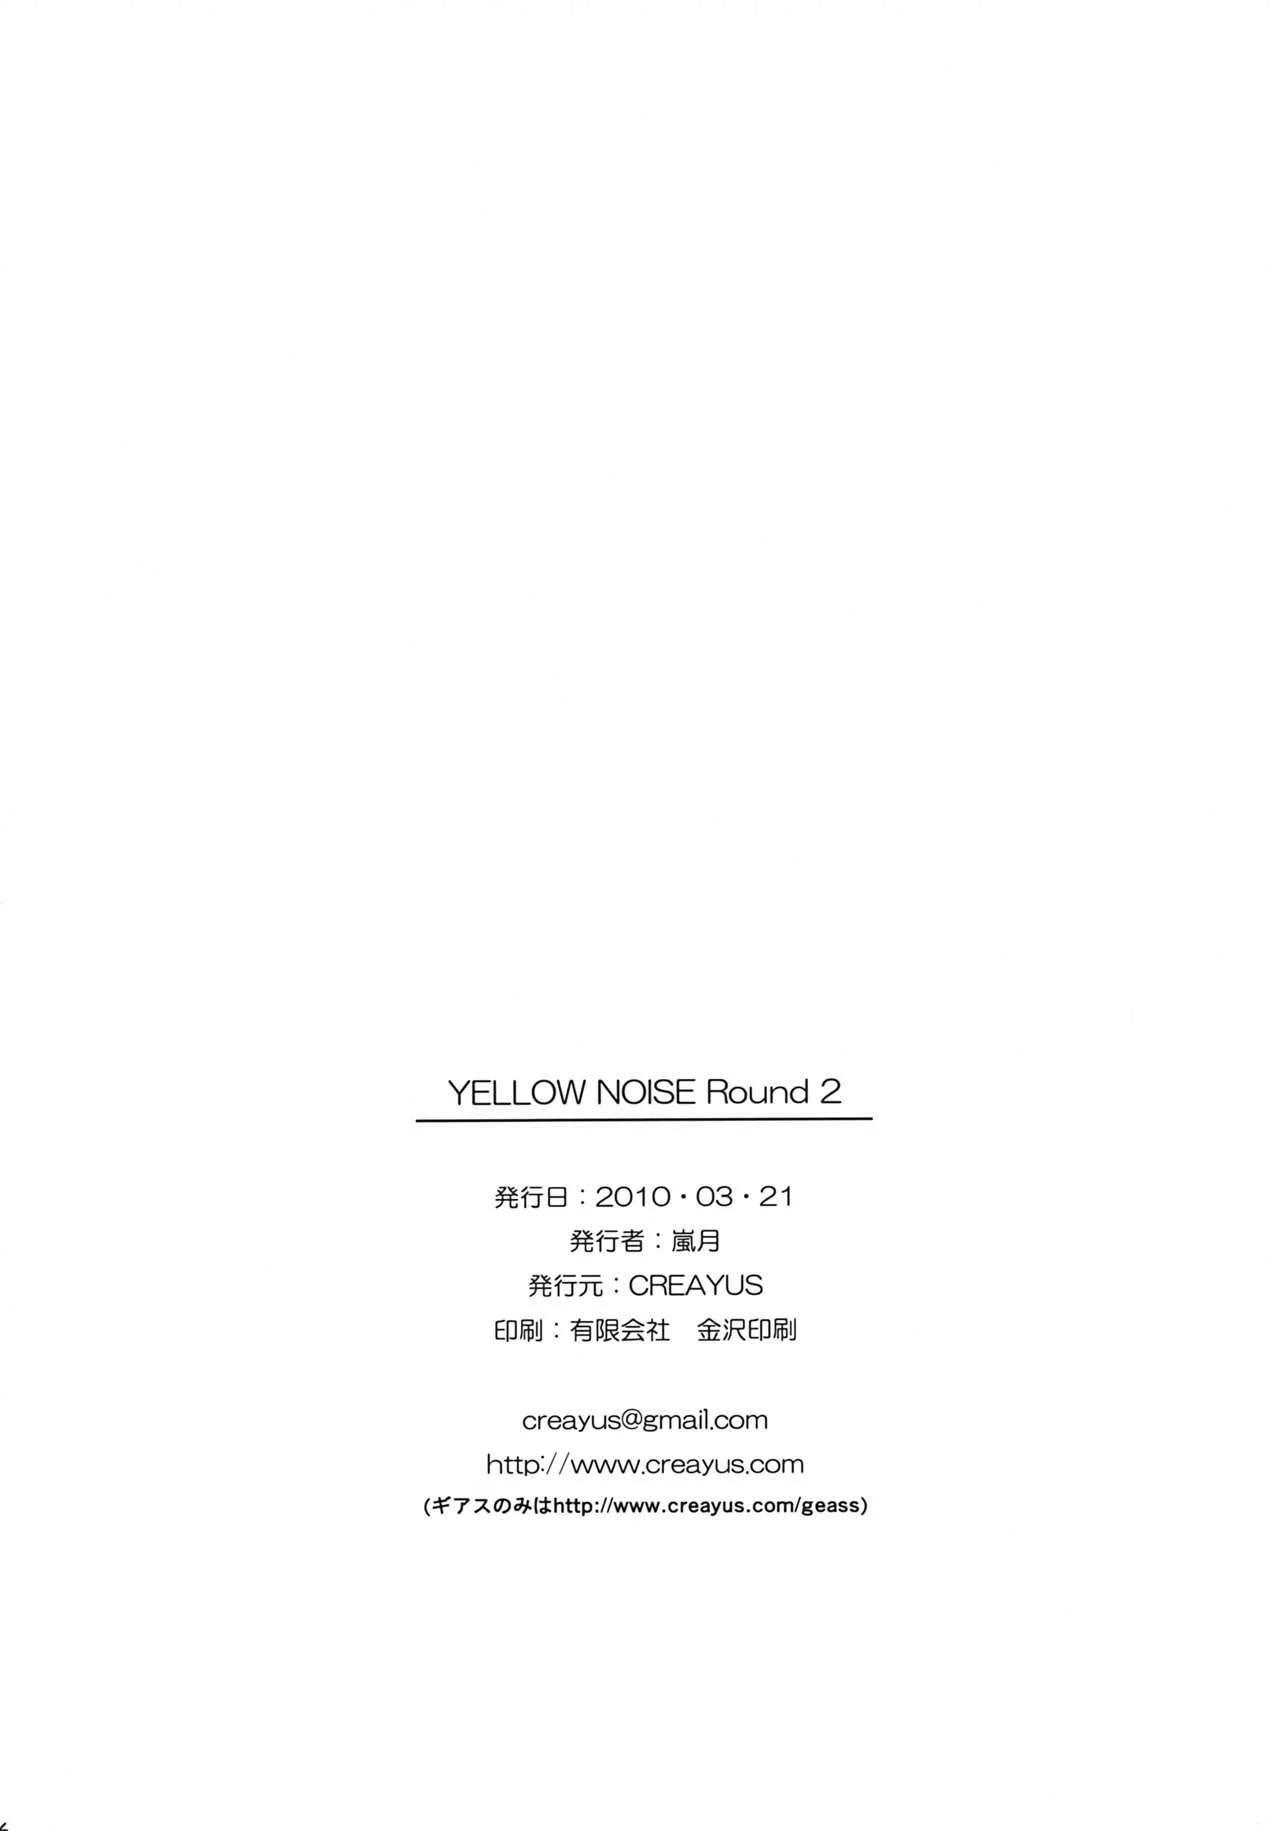 Yellow Noise 2 - 25